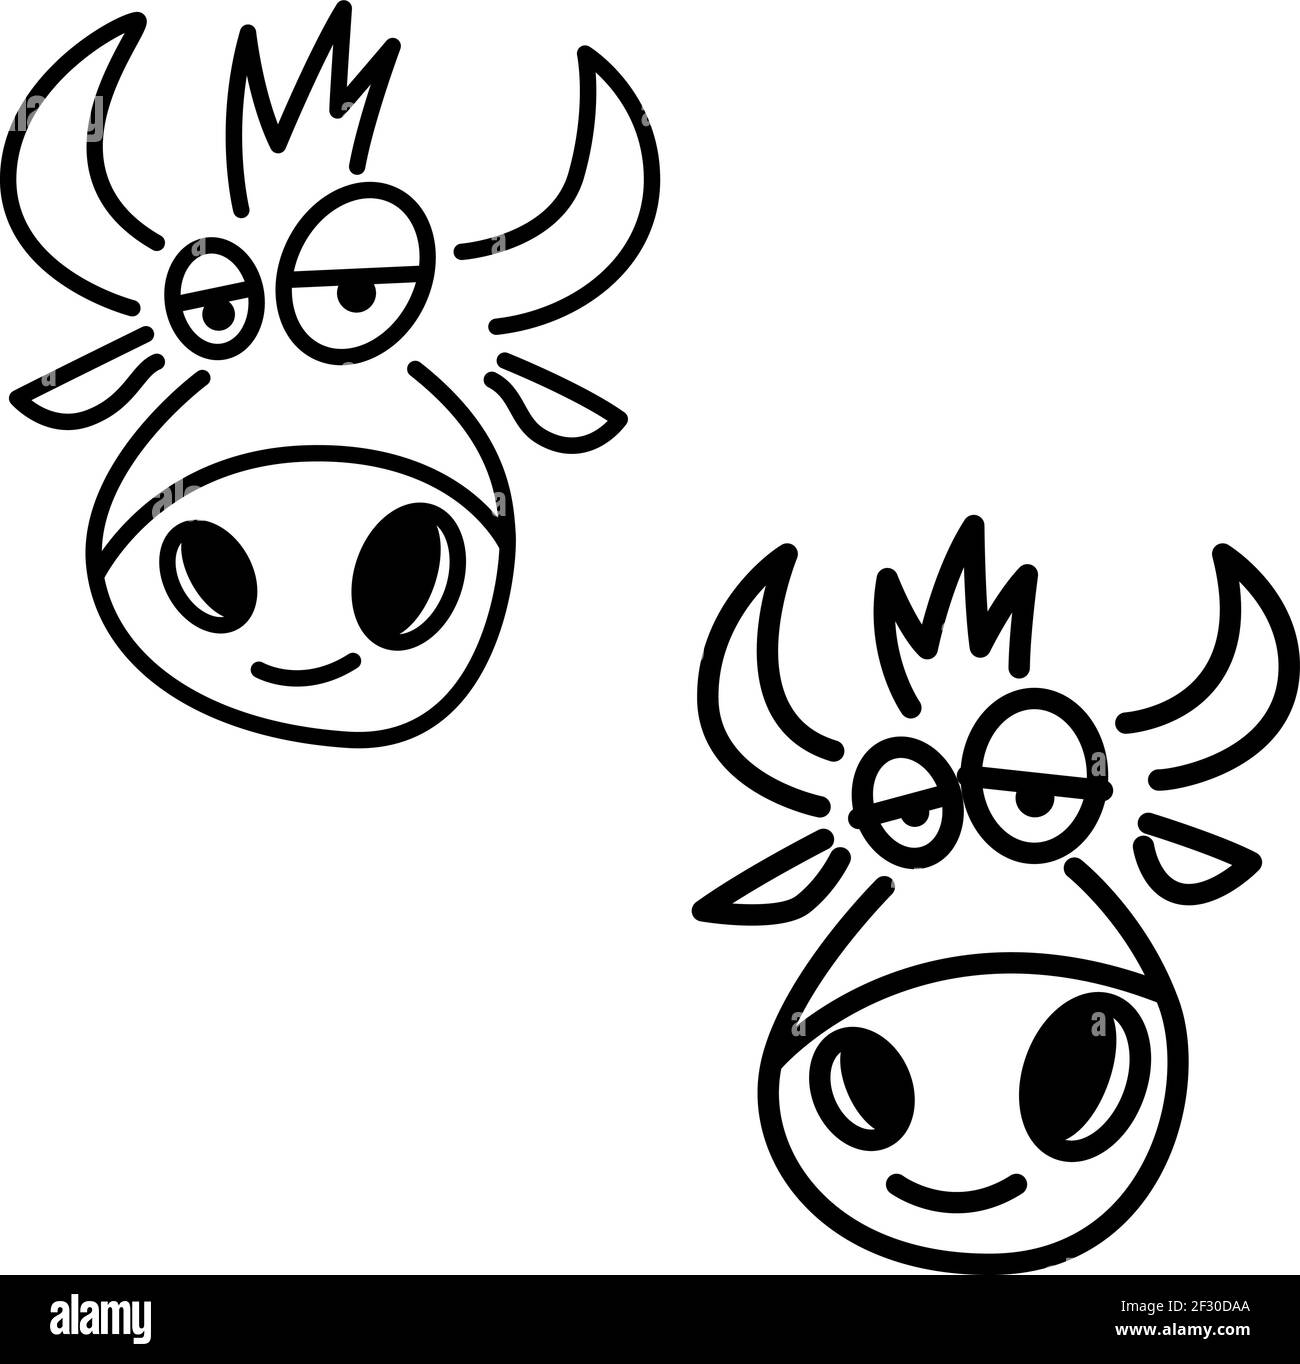 Illustration têtes de vache drôles en style ligne. Élément de conception pour affiche, carte, bannière, affiche. Illustration vectorielle Illustration de Vecteur